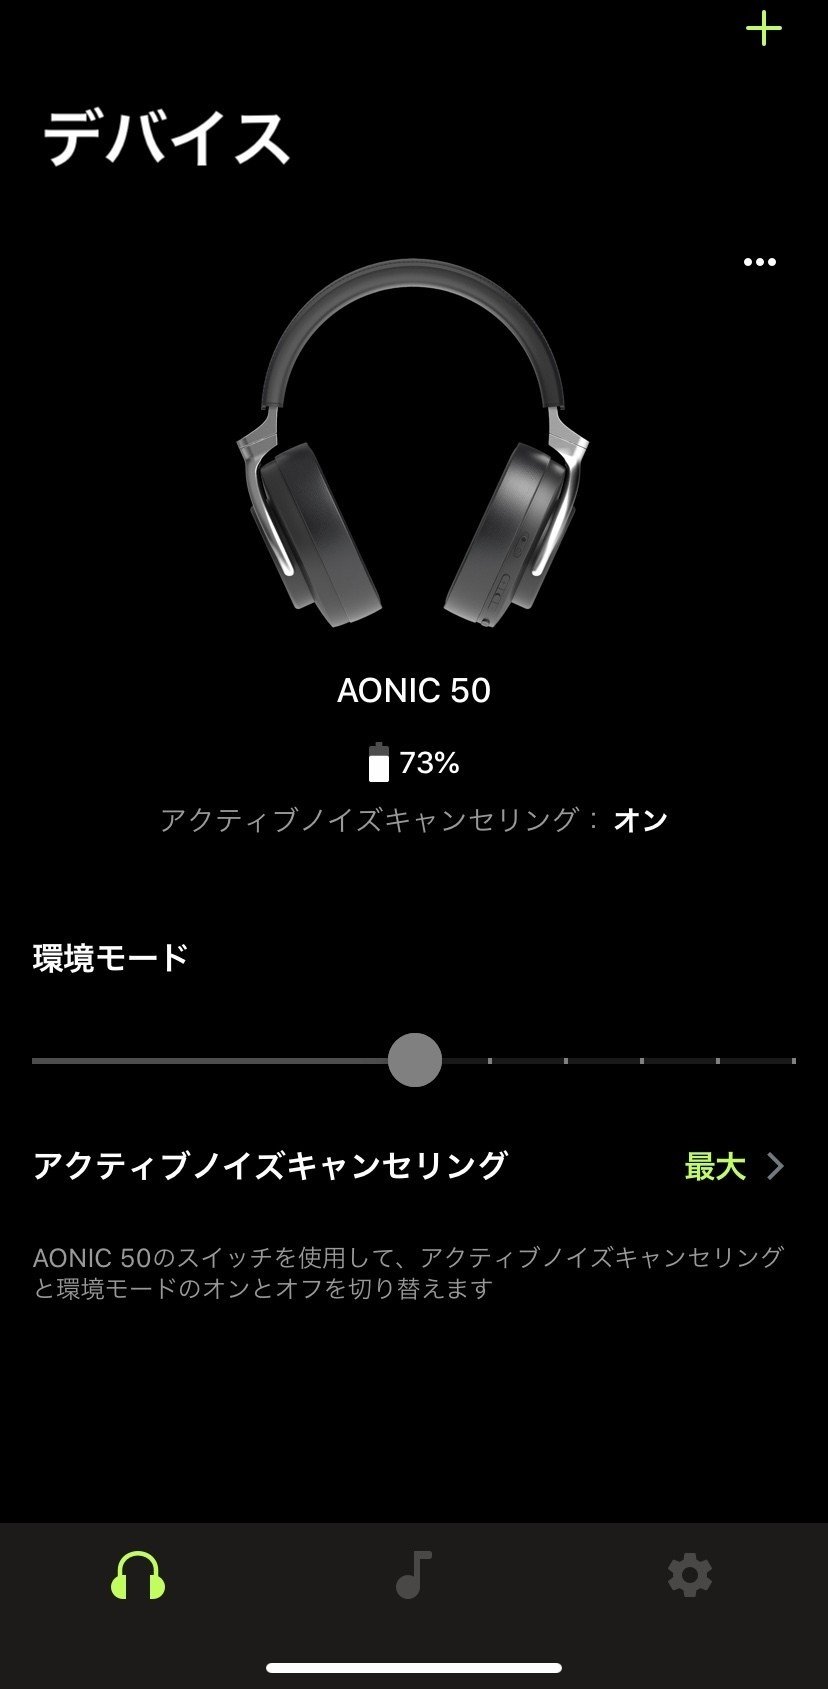 Shure Aonic50 Vs Bose Quietcomfort ノイキャン対決 アノニマスdtm編集部 Note